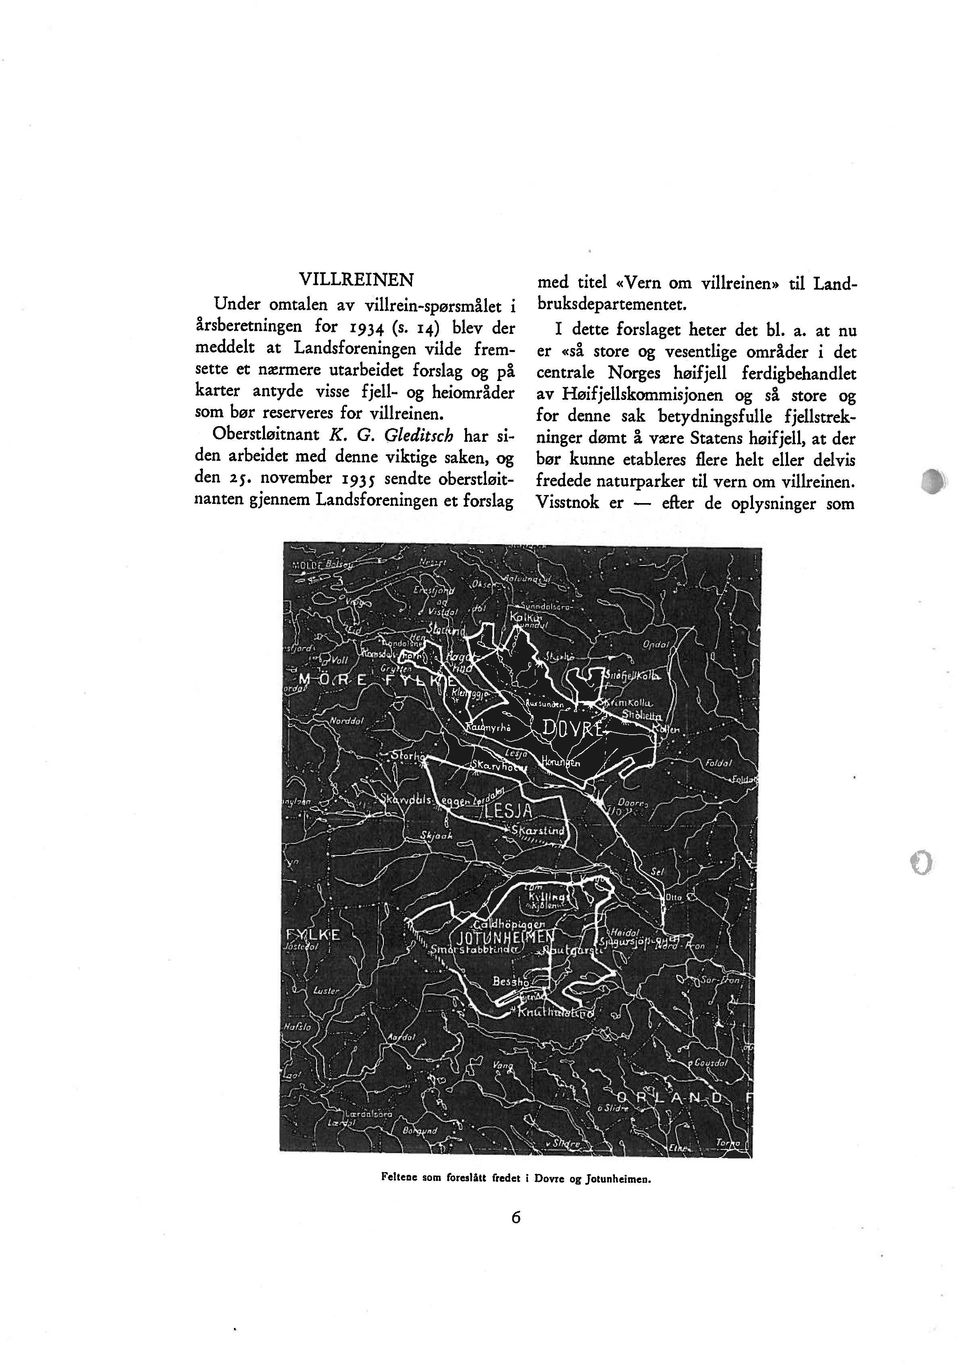 karter antyde visse fjell- og heiområder årsberetningen for 1934 (s.